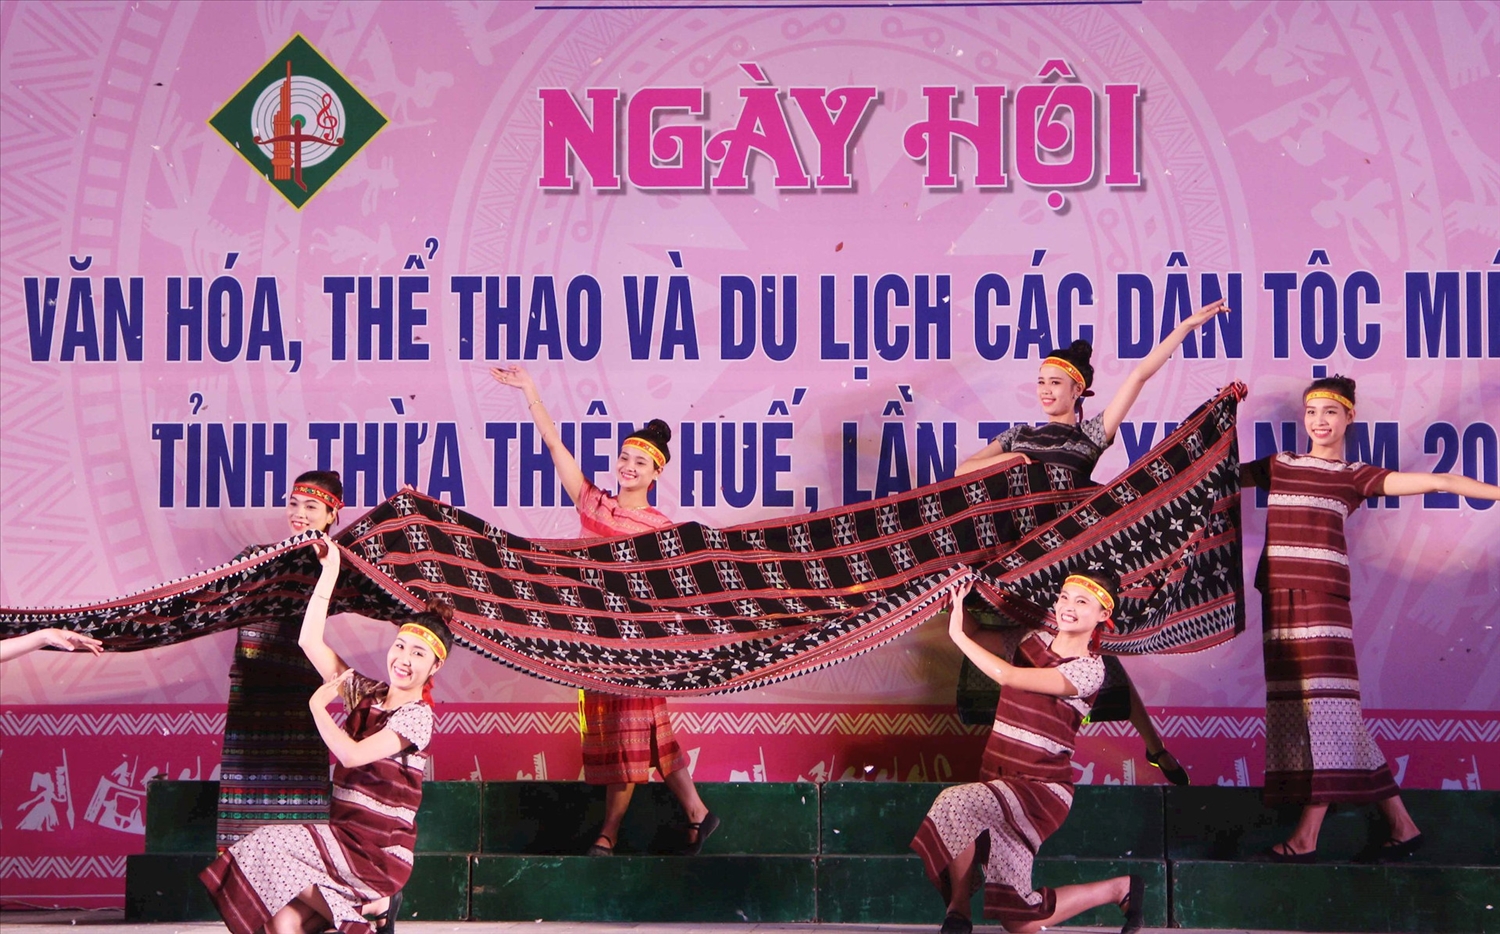 Ngày hội Văn hóa, Thể thao và Du lịch các dân tộc miền núi tỉnh Thừa Thiên Huế góp phần giới thiệu những nét văn hóa đặc sắc, sự phong phú độc đáo của văn hóa các dân tộc miền núi Thừa Thiên Huế được tổ chức nhằm trong cộng đồng các dân tộc Việt Nam, 